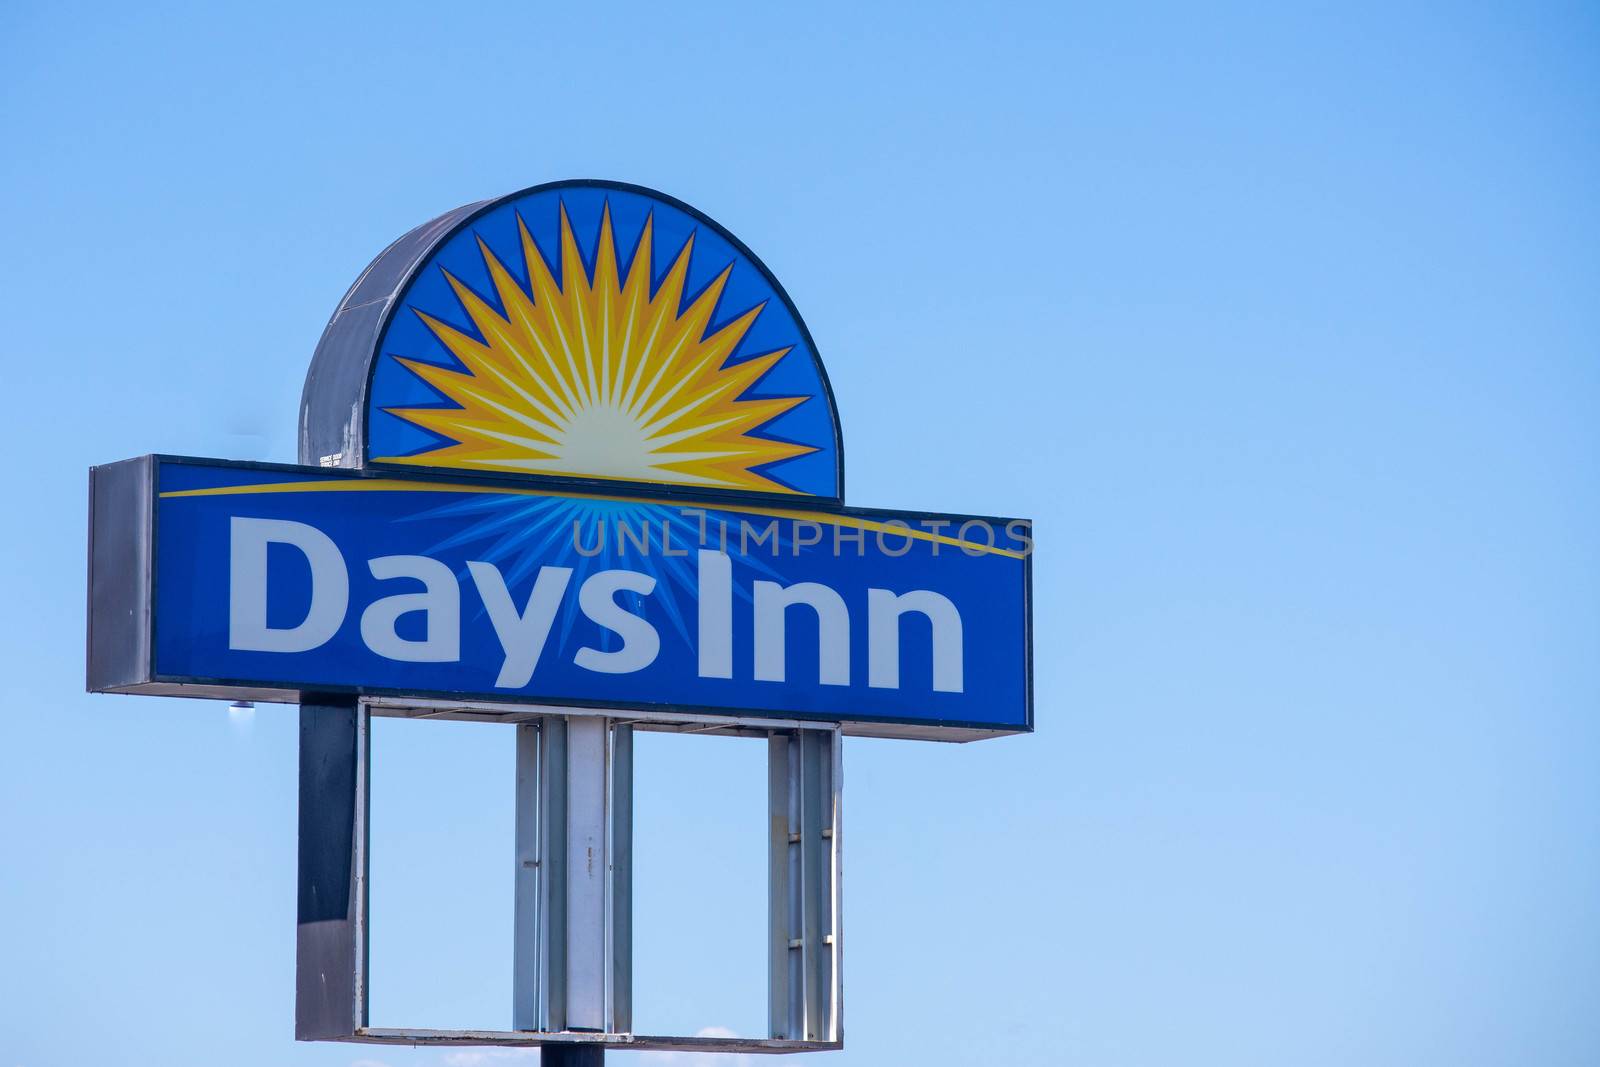 Days Inn  Hotel Sign on blue sky sunny day by kingmaphotos